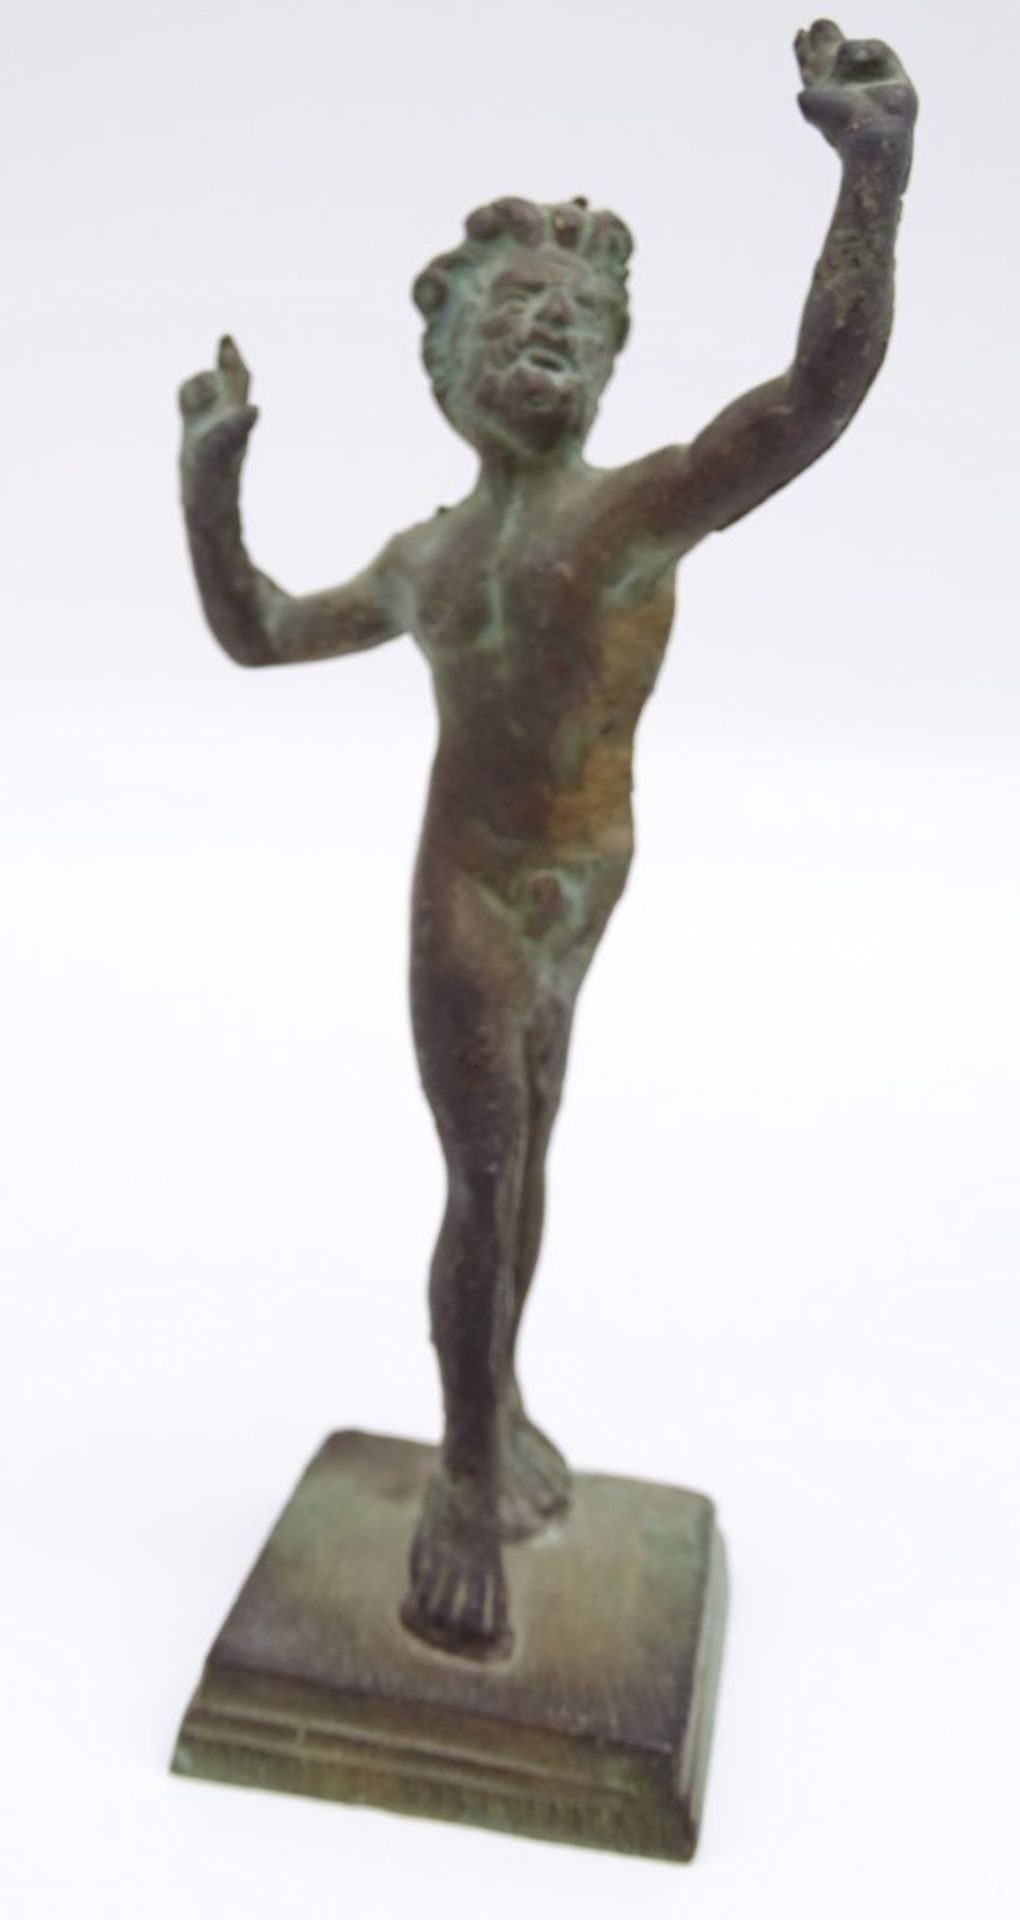 2 x Kopien des Tanzenden Fauns, Casa del Fauno, Pompeij, 1 x Kopie der Venus im Bad, Slg. Barsanti, - Bild 3 aus 8